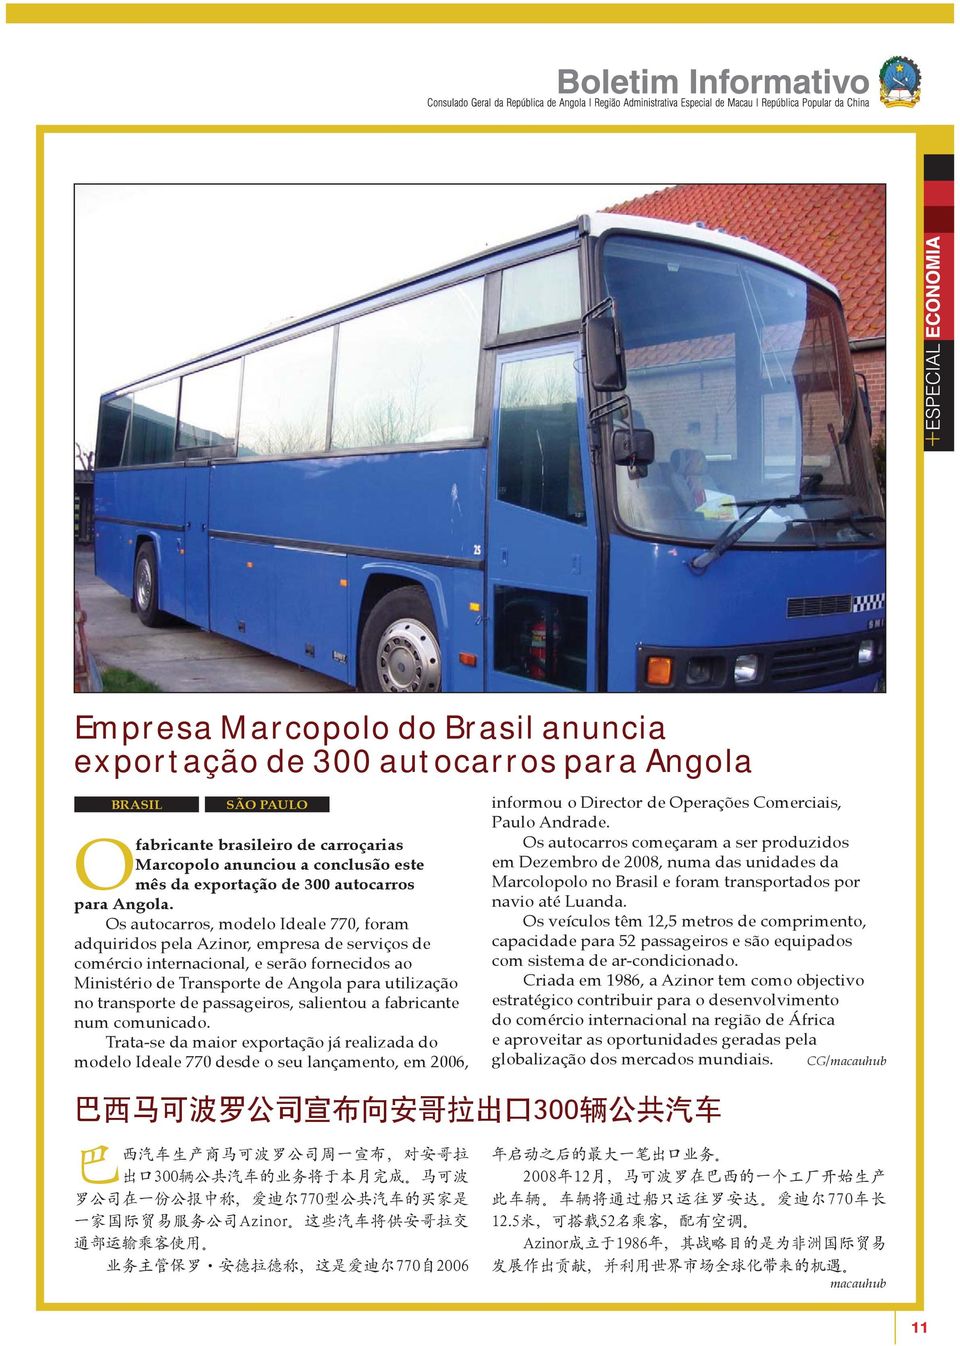 s autocarros, modelo Ideale 770, foram adquiridos pela Azinor, empresa de serviços de comércio internacional, e serão fornecidos ao Ministério de Transporte de Angola para utilização no transporte de